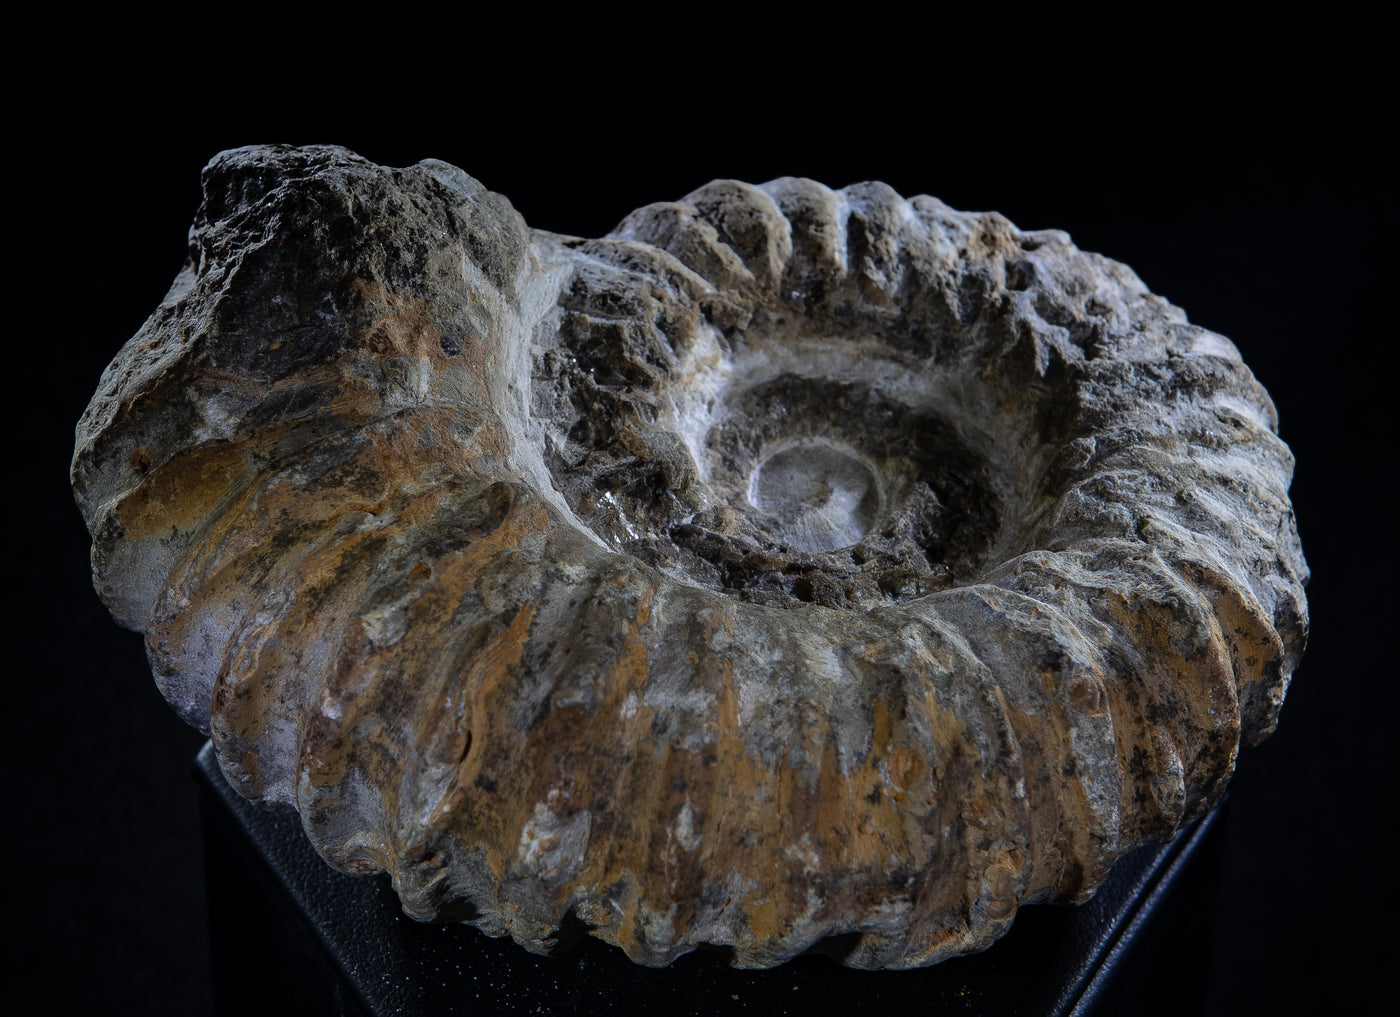 419 Ammonite Fossil 1.5 lb 2.5 x 4 in